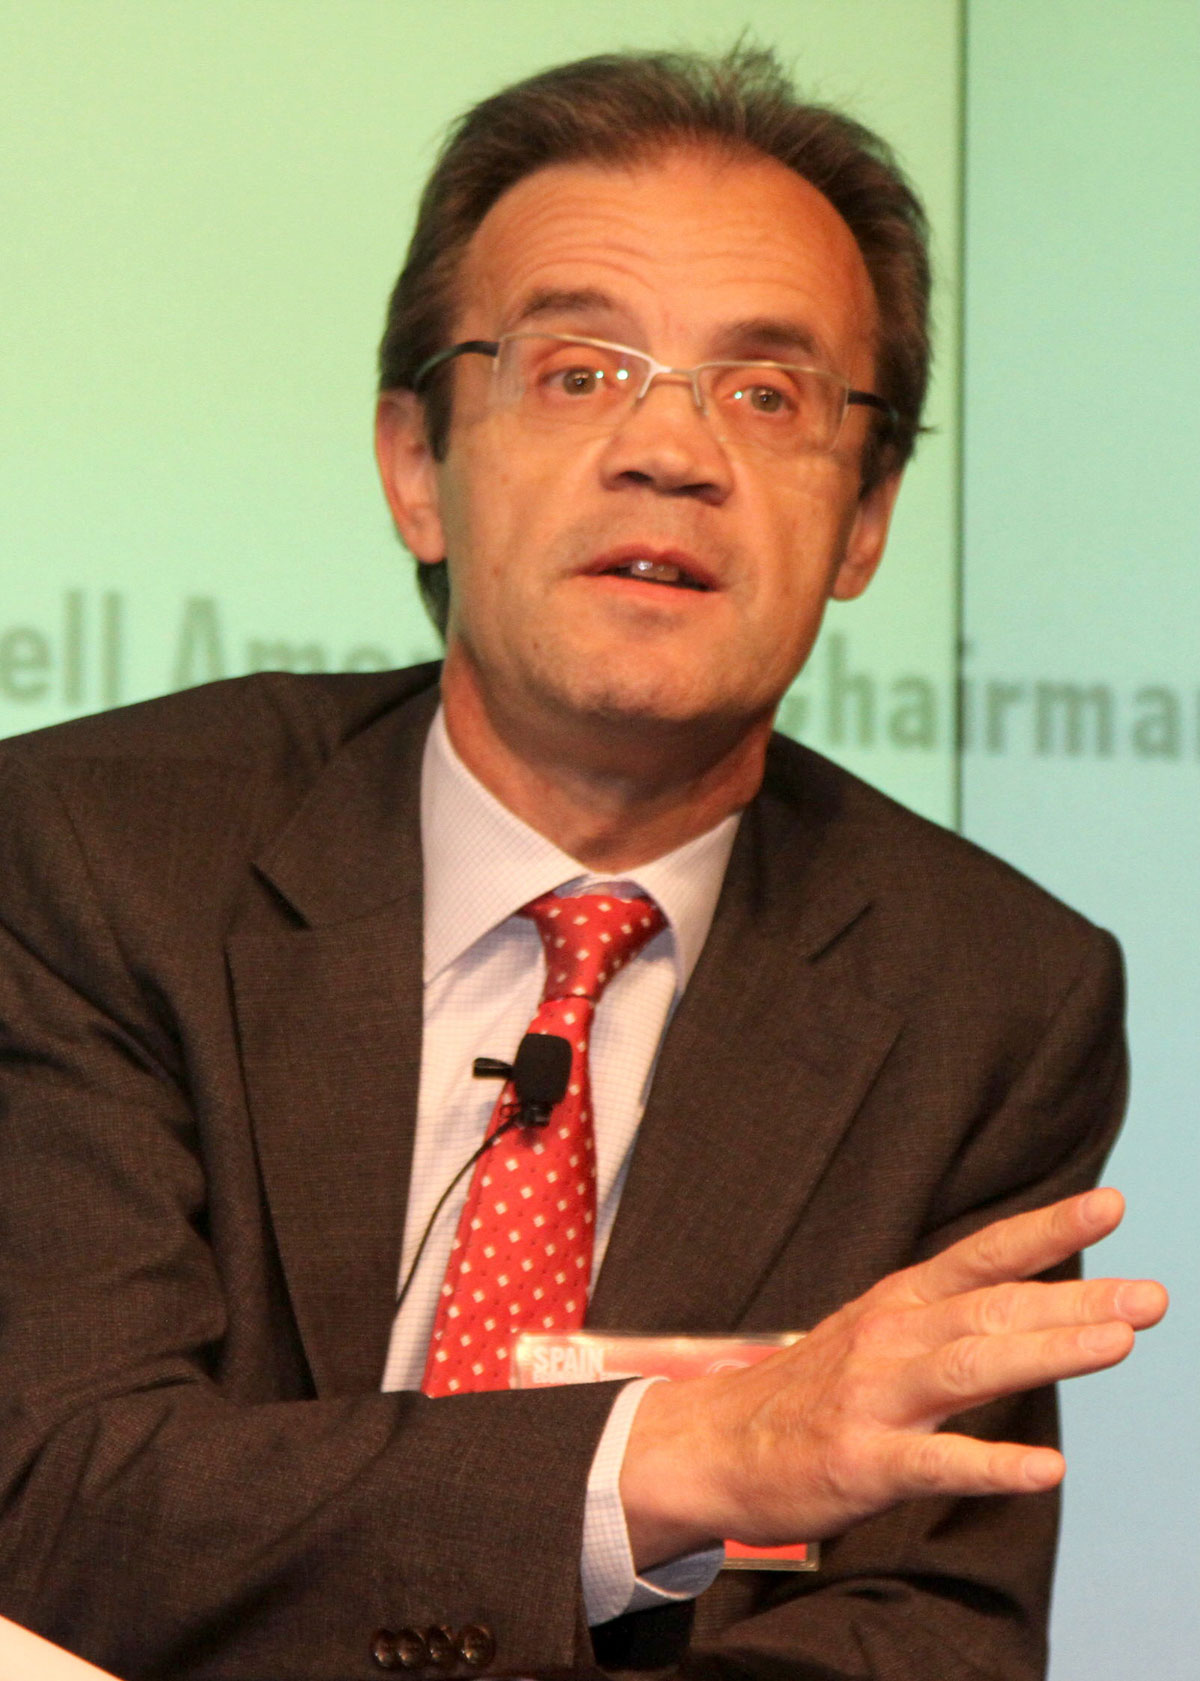 El economista Jordi Gual, hasta ahora economista jefe de CaixaBank